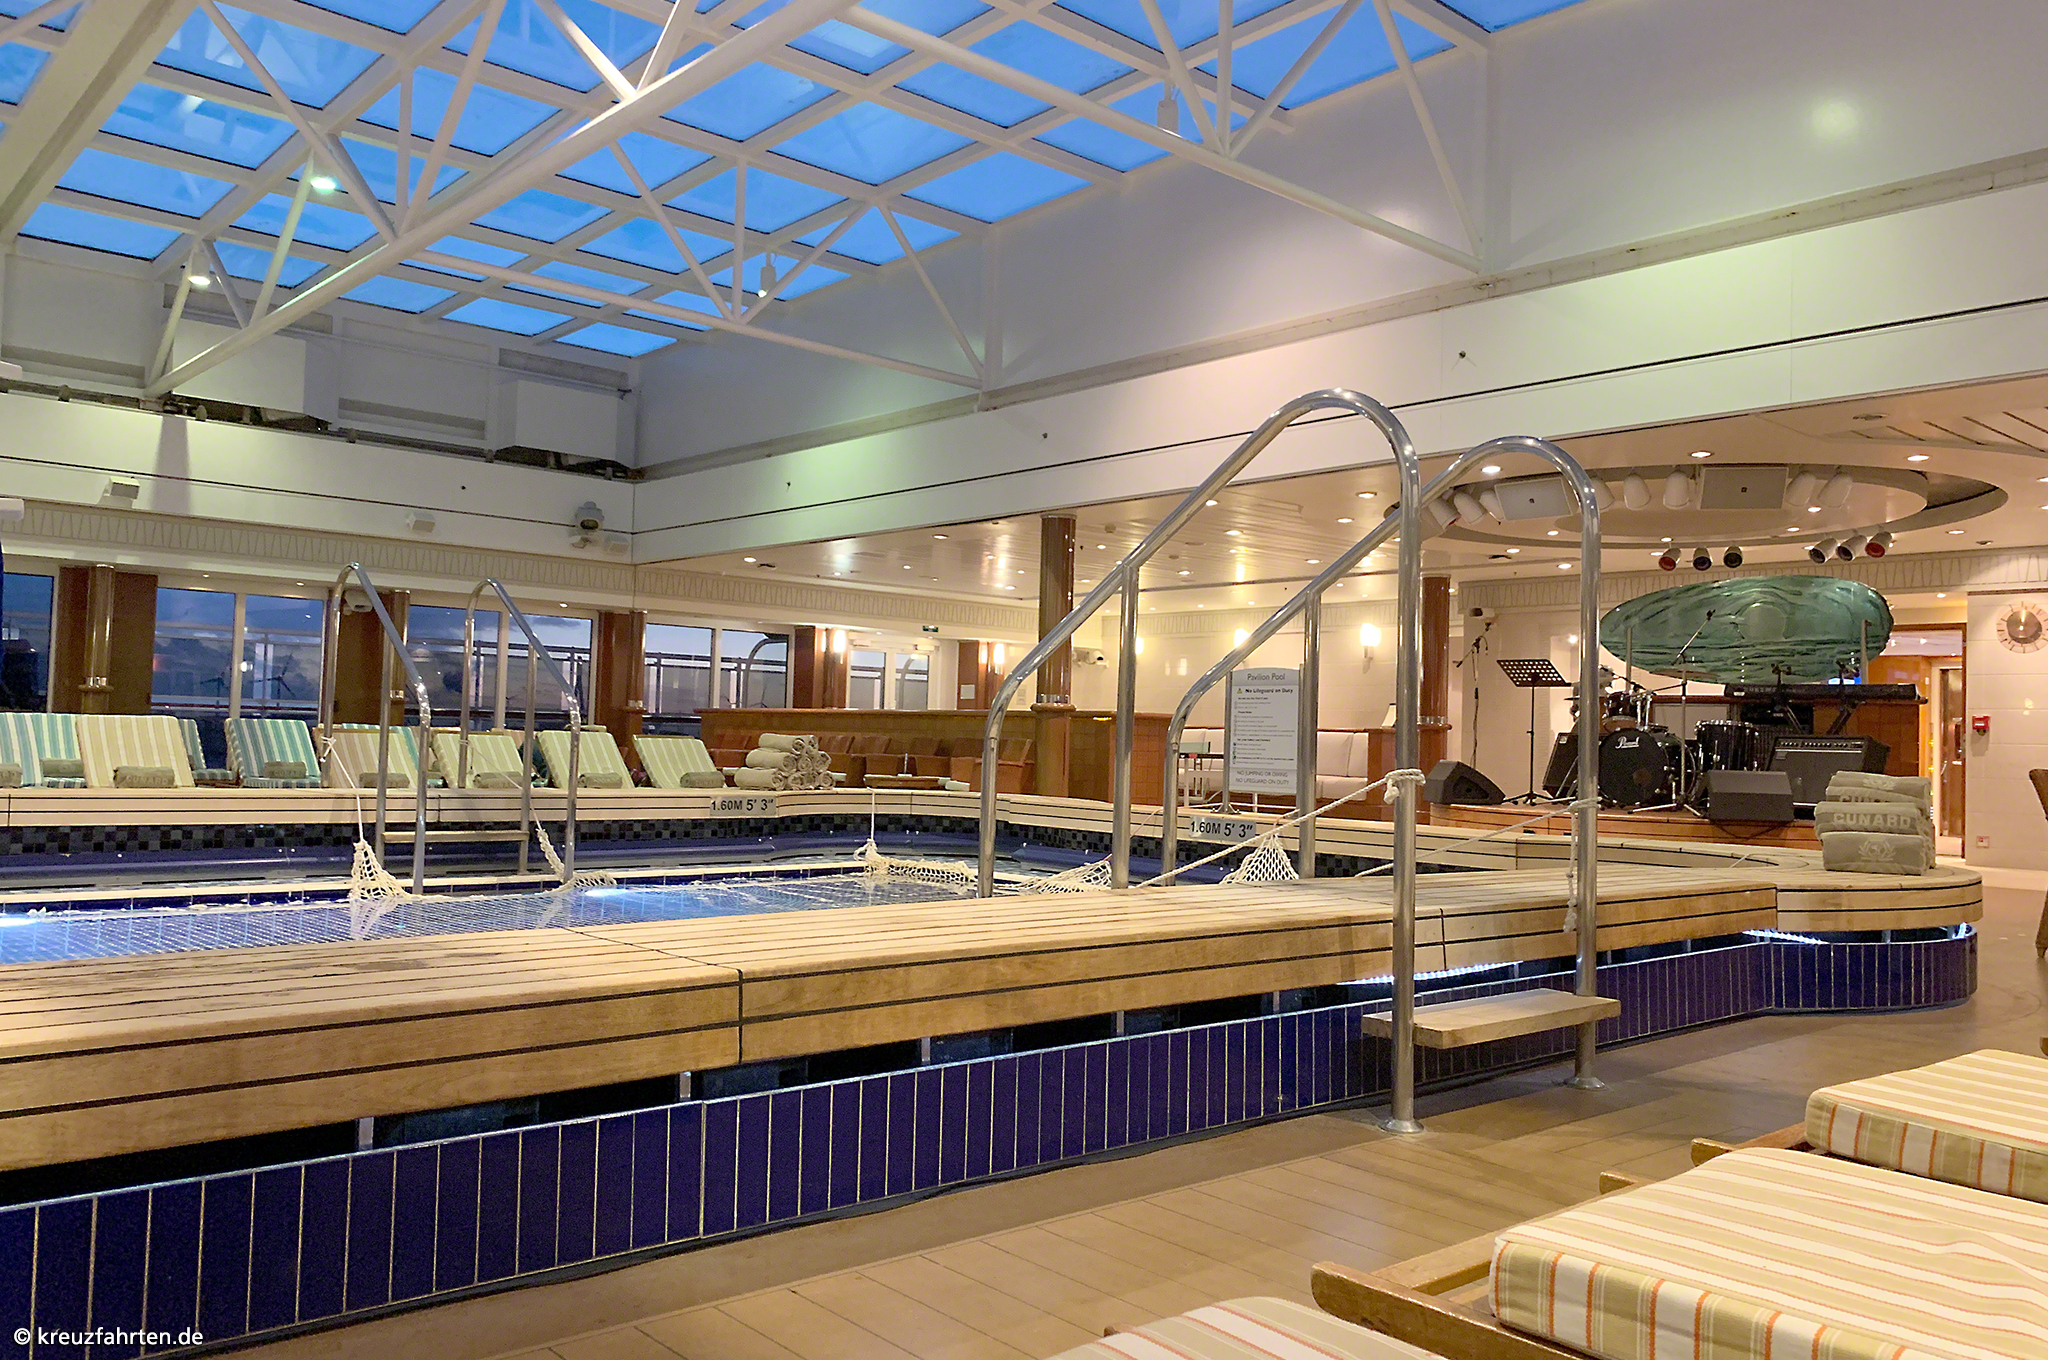 Pavilion Pool